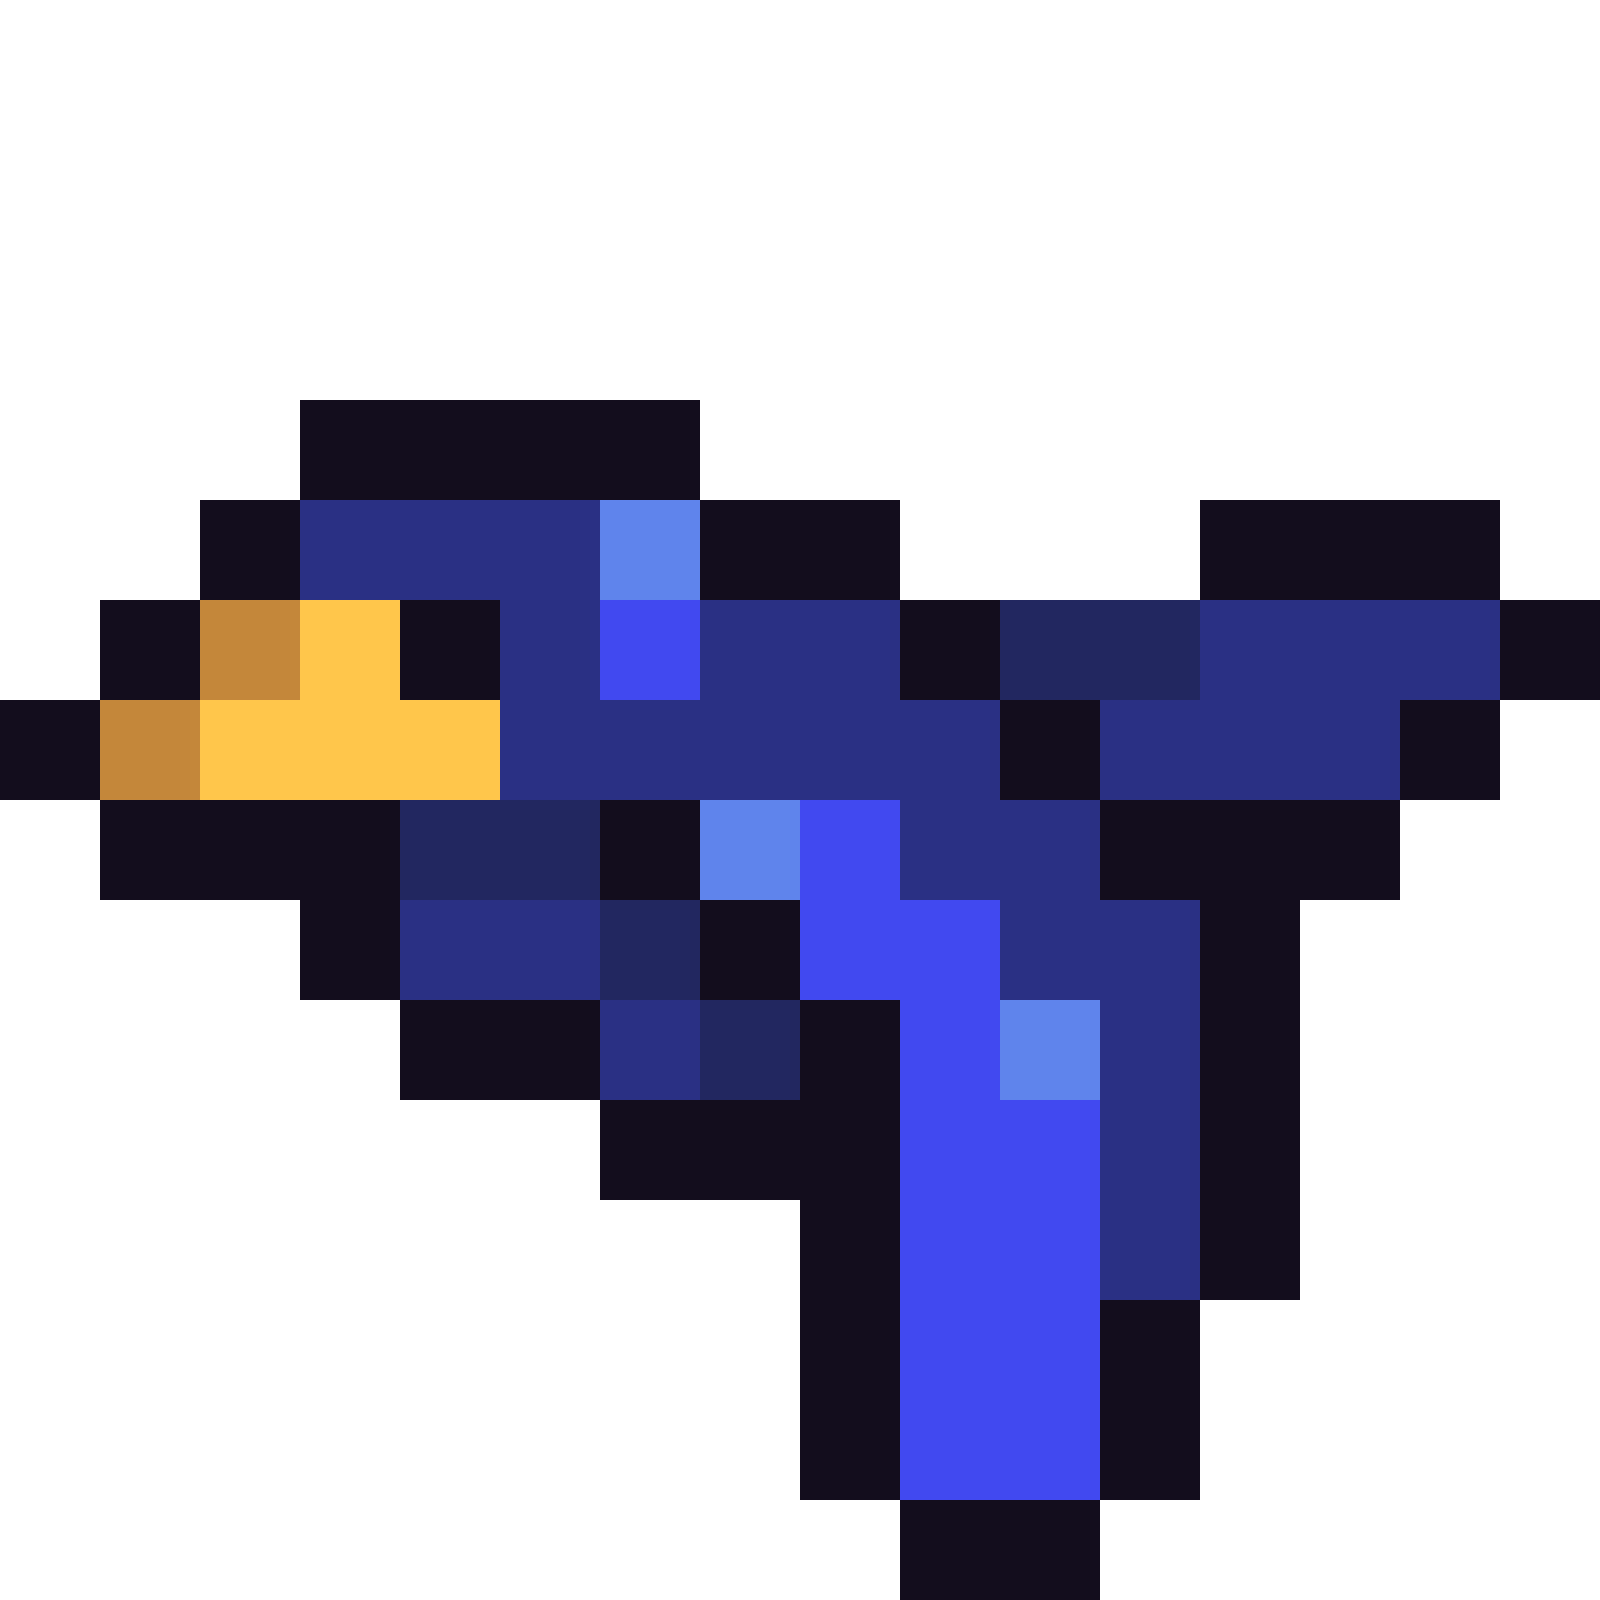 flying bird pixel art grid Pixel art bird 16x16 by ma9ici4n - Pixel Art ...